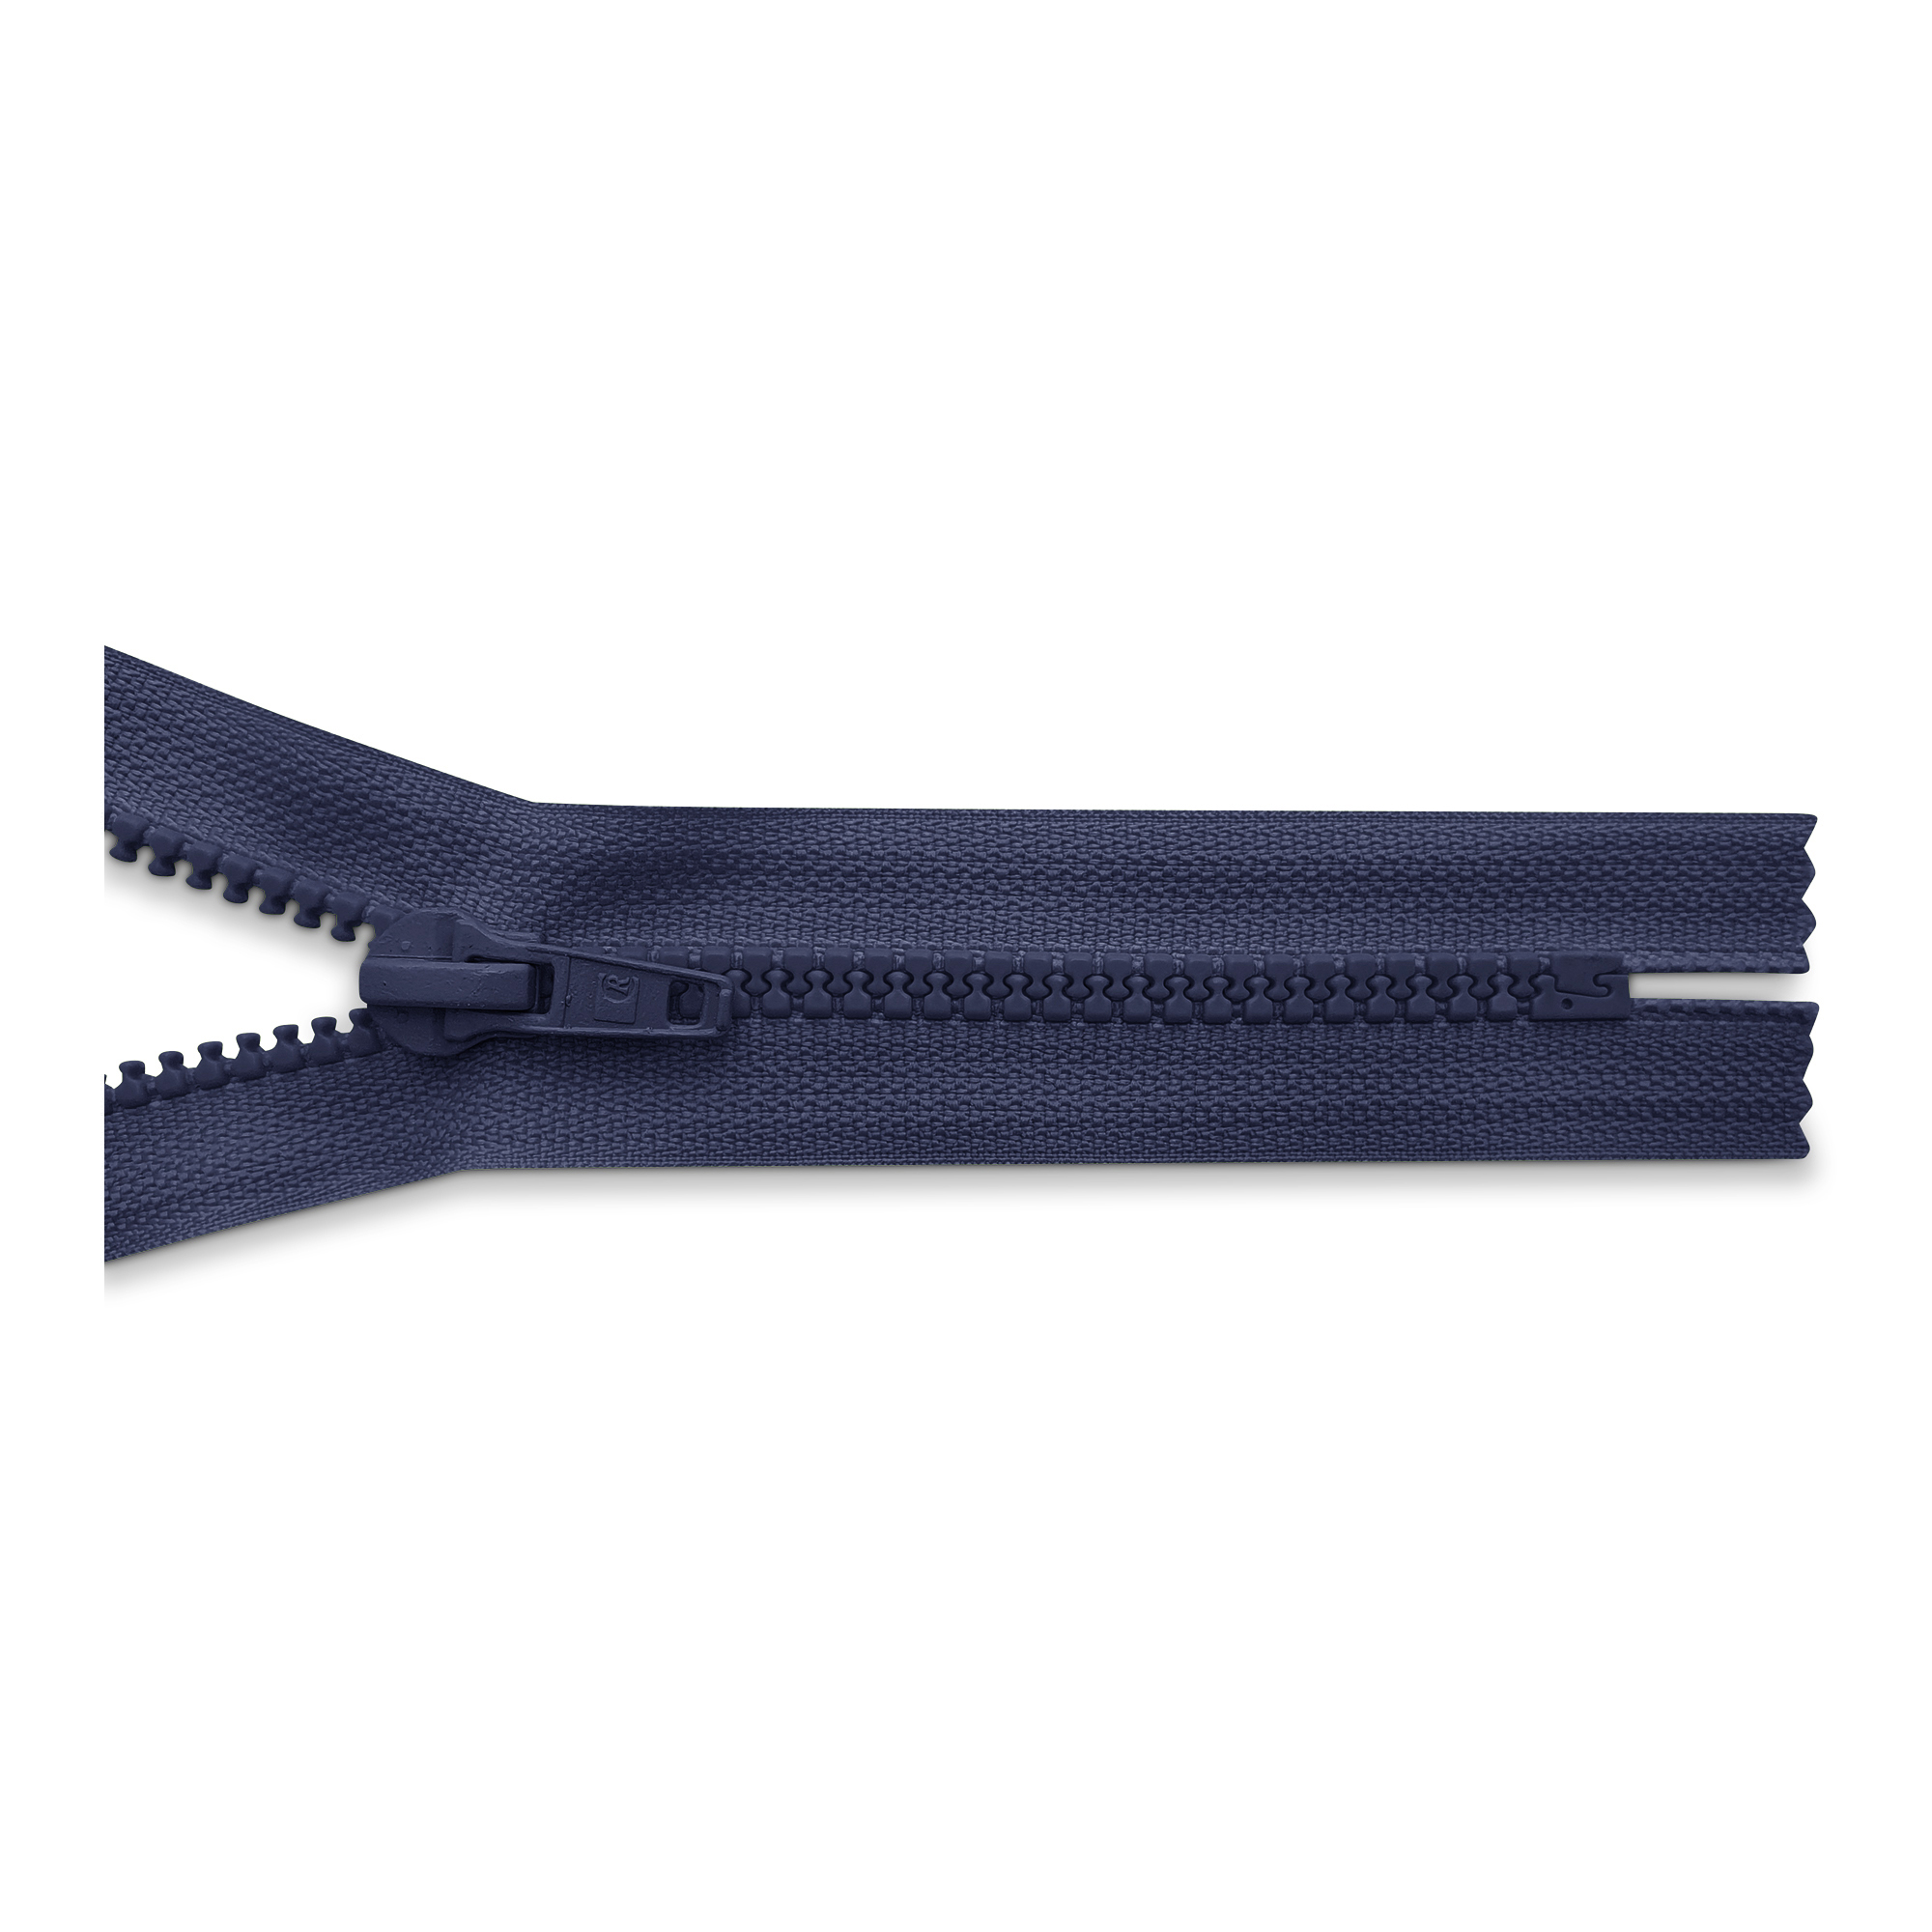 Reißverschluss, nicht teilbar, K.stoff Zähne breit, dunkelblau, hochwertiger Marken-Reißverschluss von Rubi/Barcelona